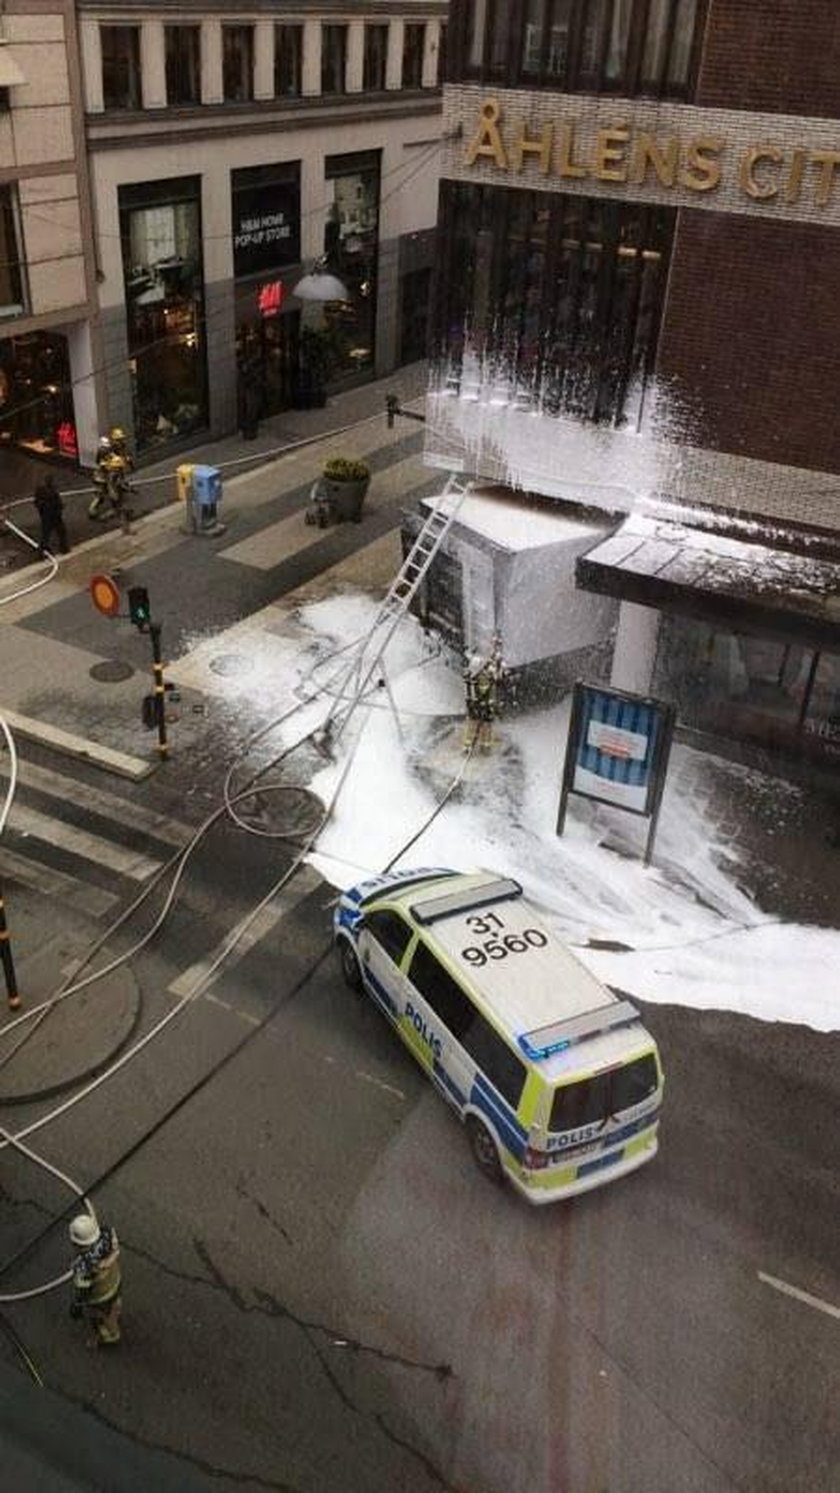 Podejrzany o zamach w Sztokholmie rozpowszechniał treści związane z Państwem Islamskim